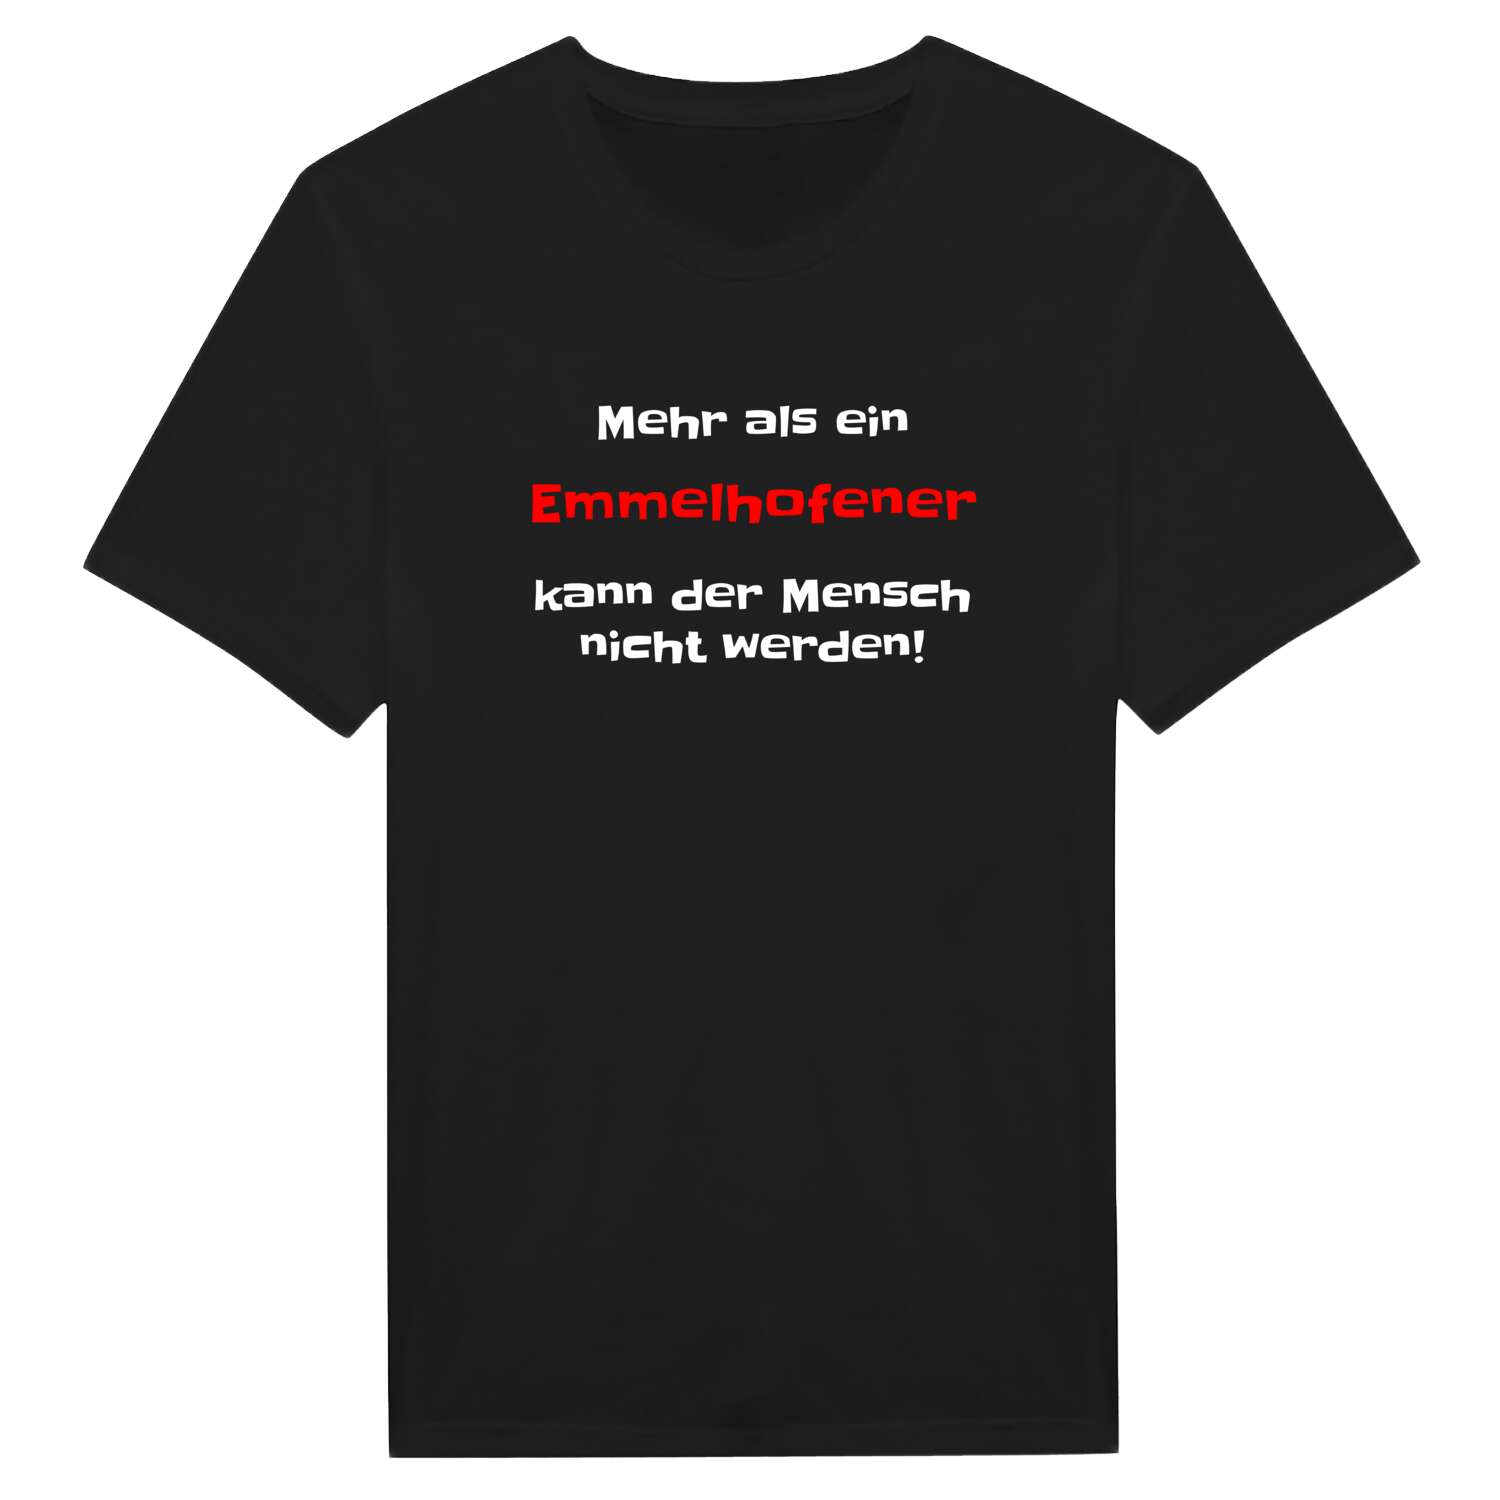 Emmelhofen T-Shirt »Mehr als ein«